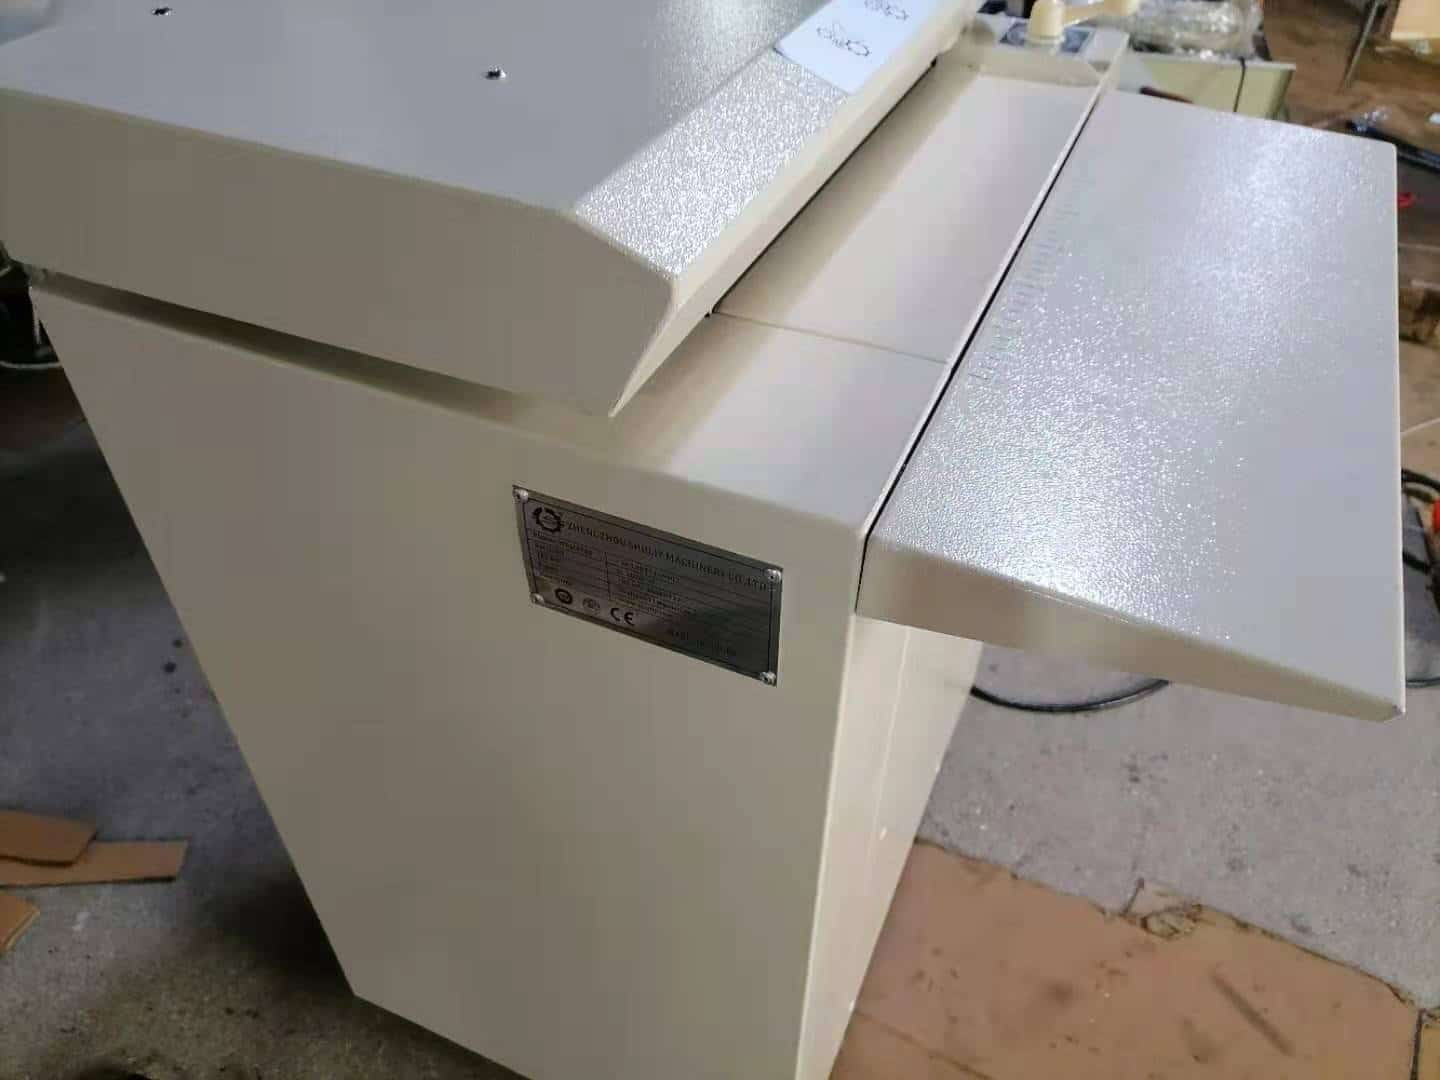 trituradora de papel modelo 425